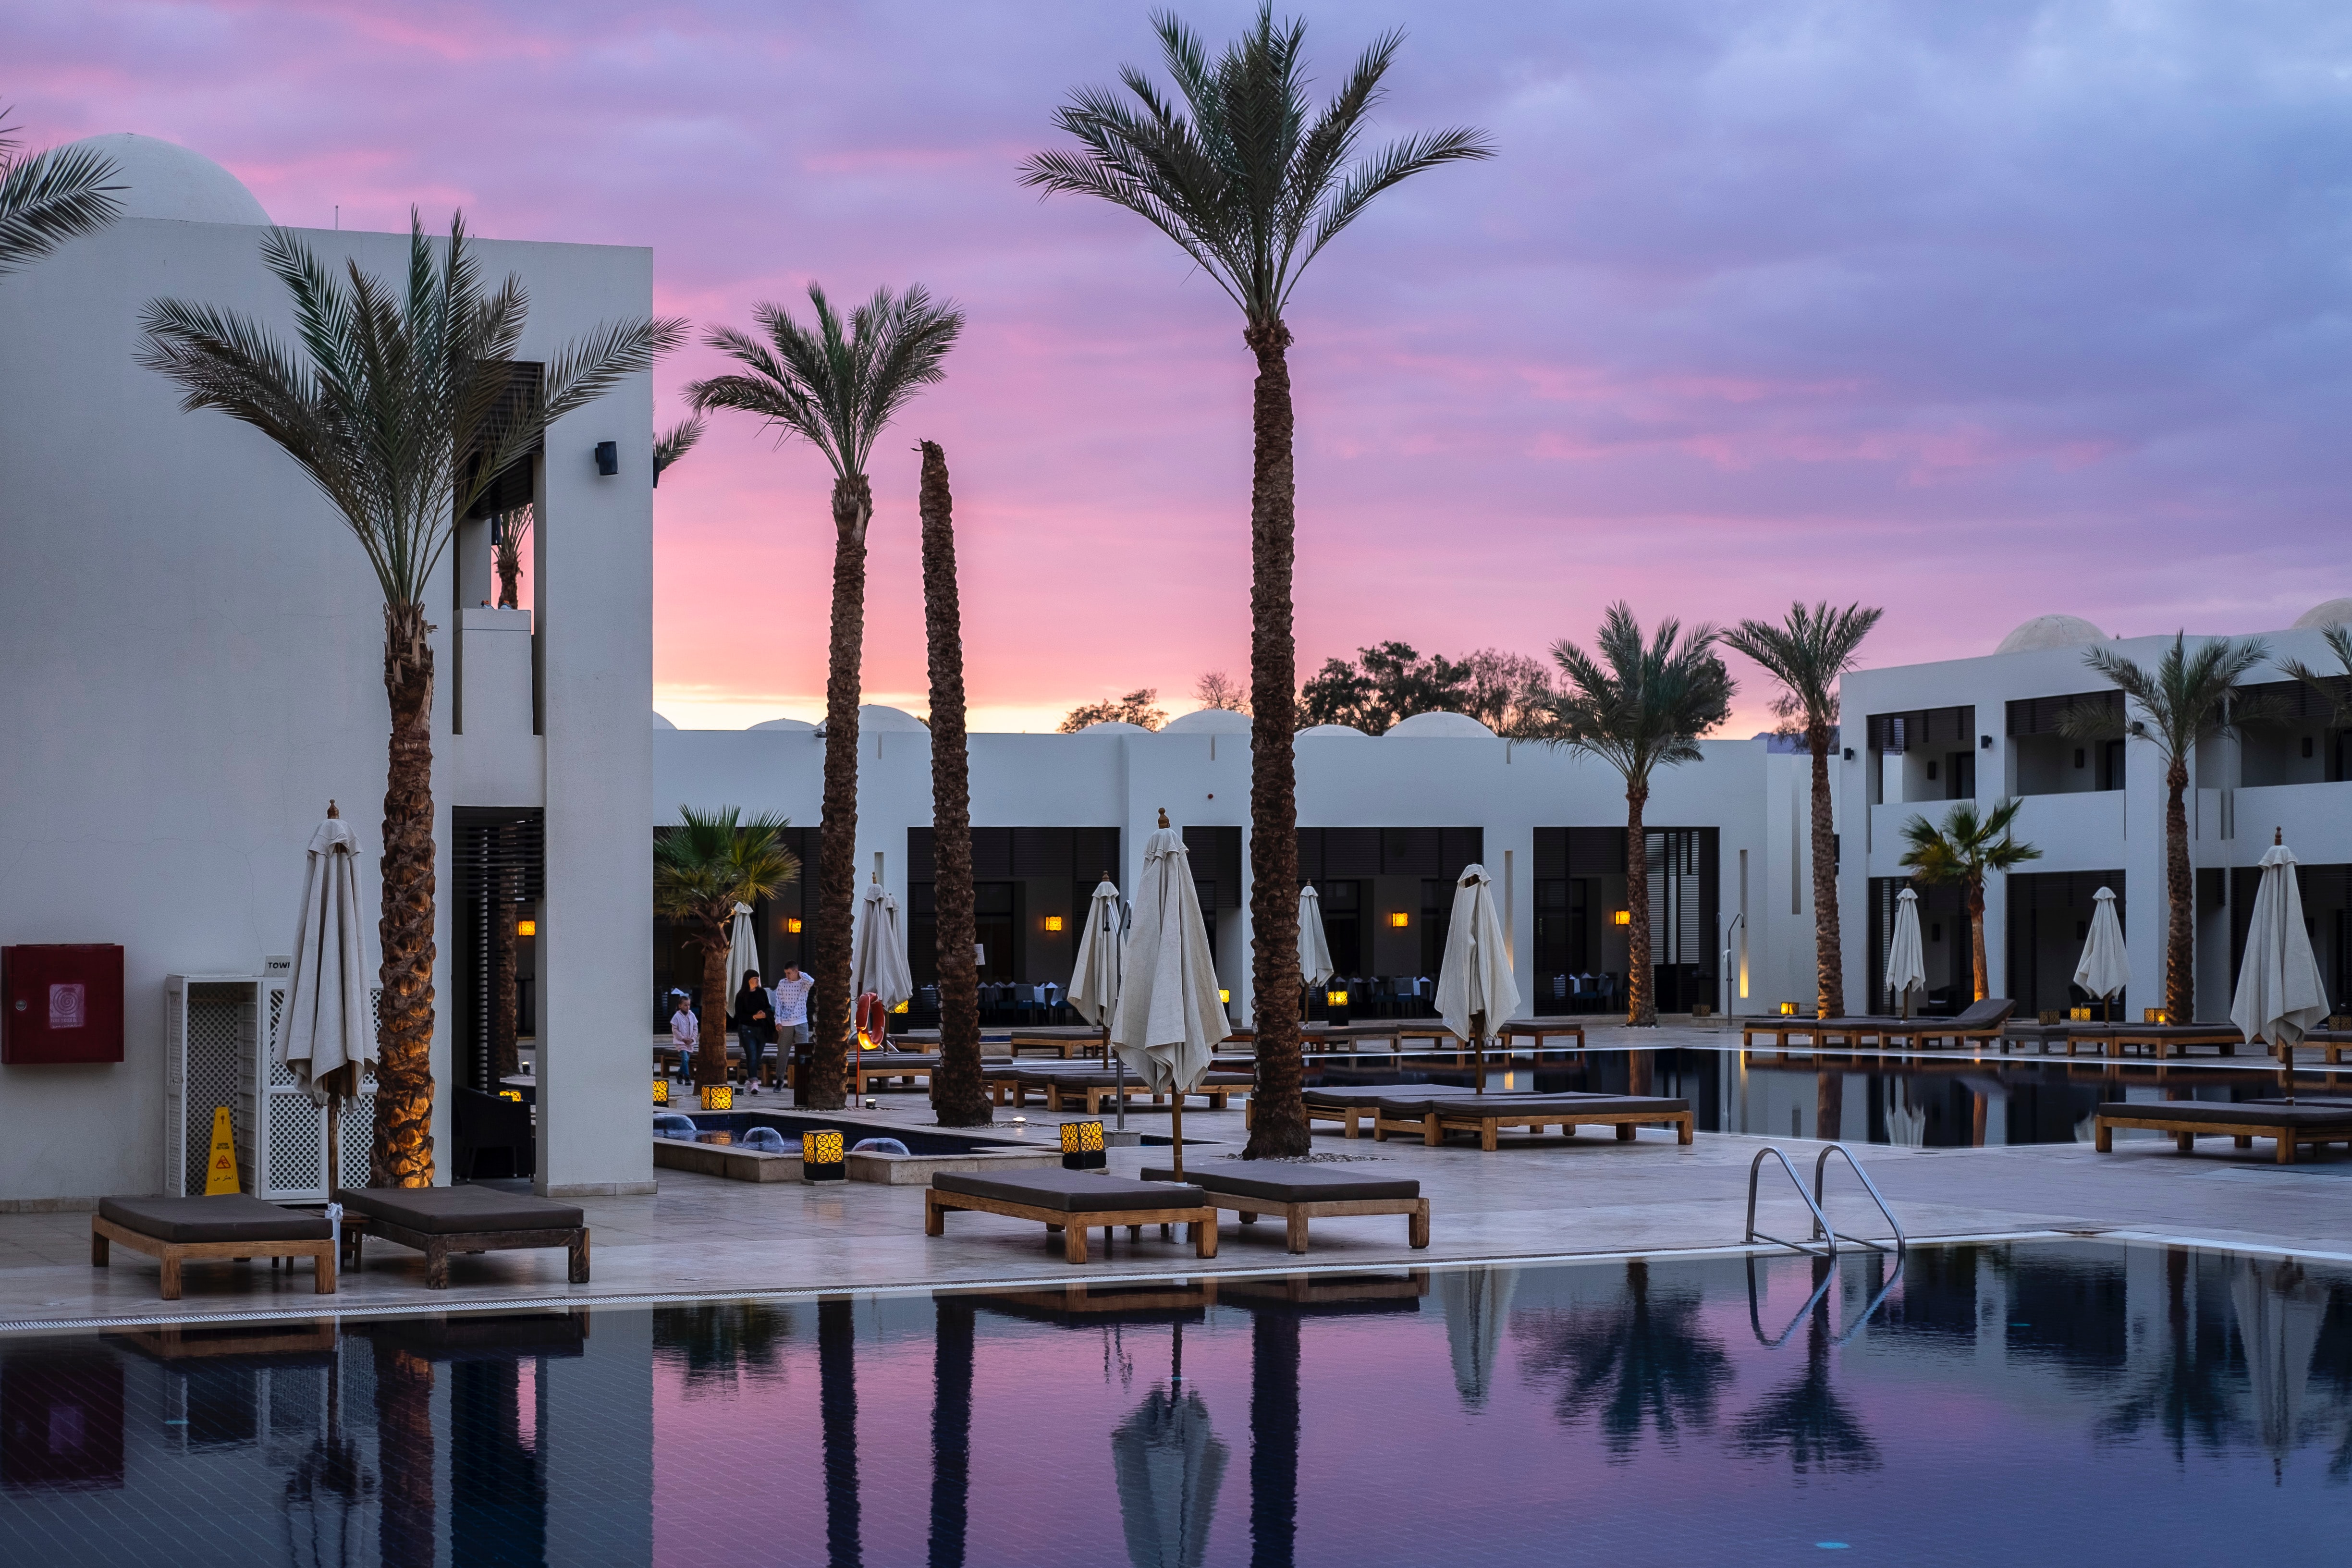 Hotel di lusso al tramonto con piscina, palme, sdrai...in pratica tutti in comfort che accetterebbe qualunque persona